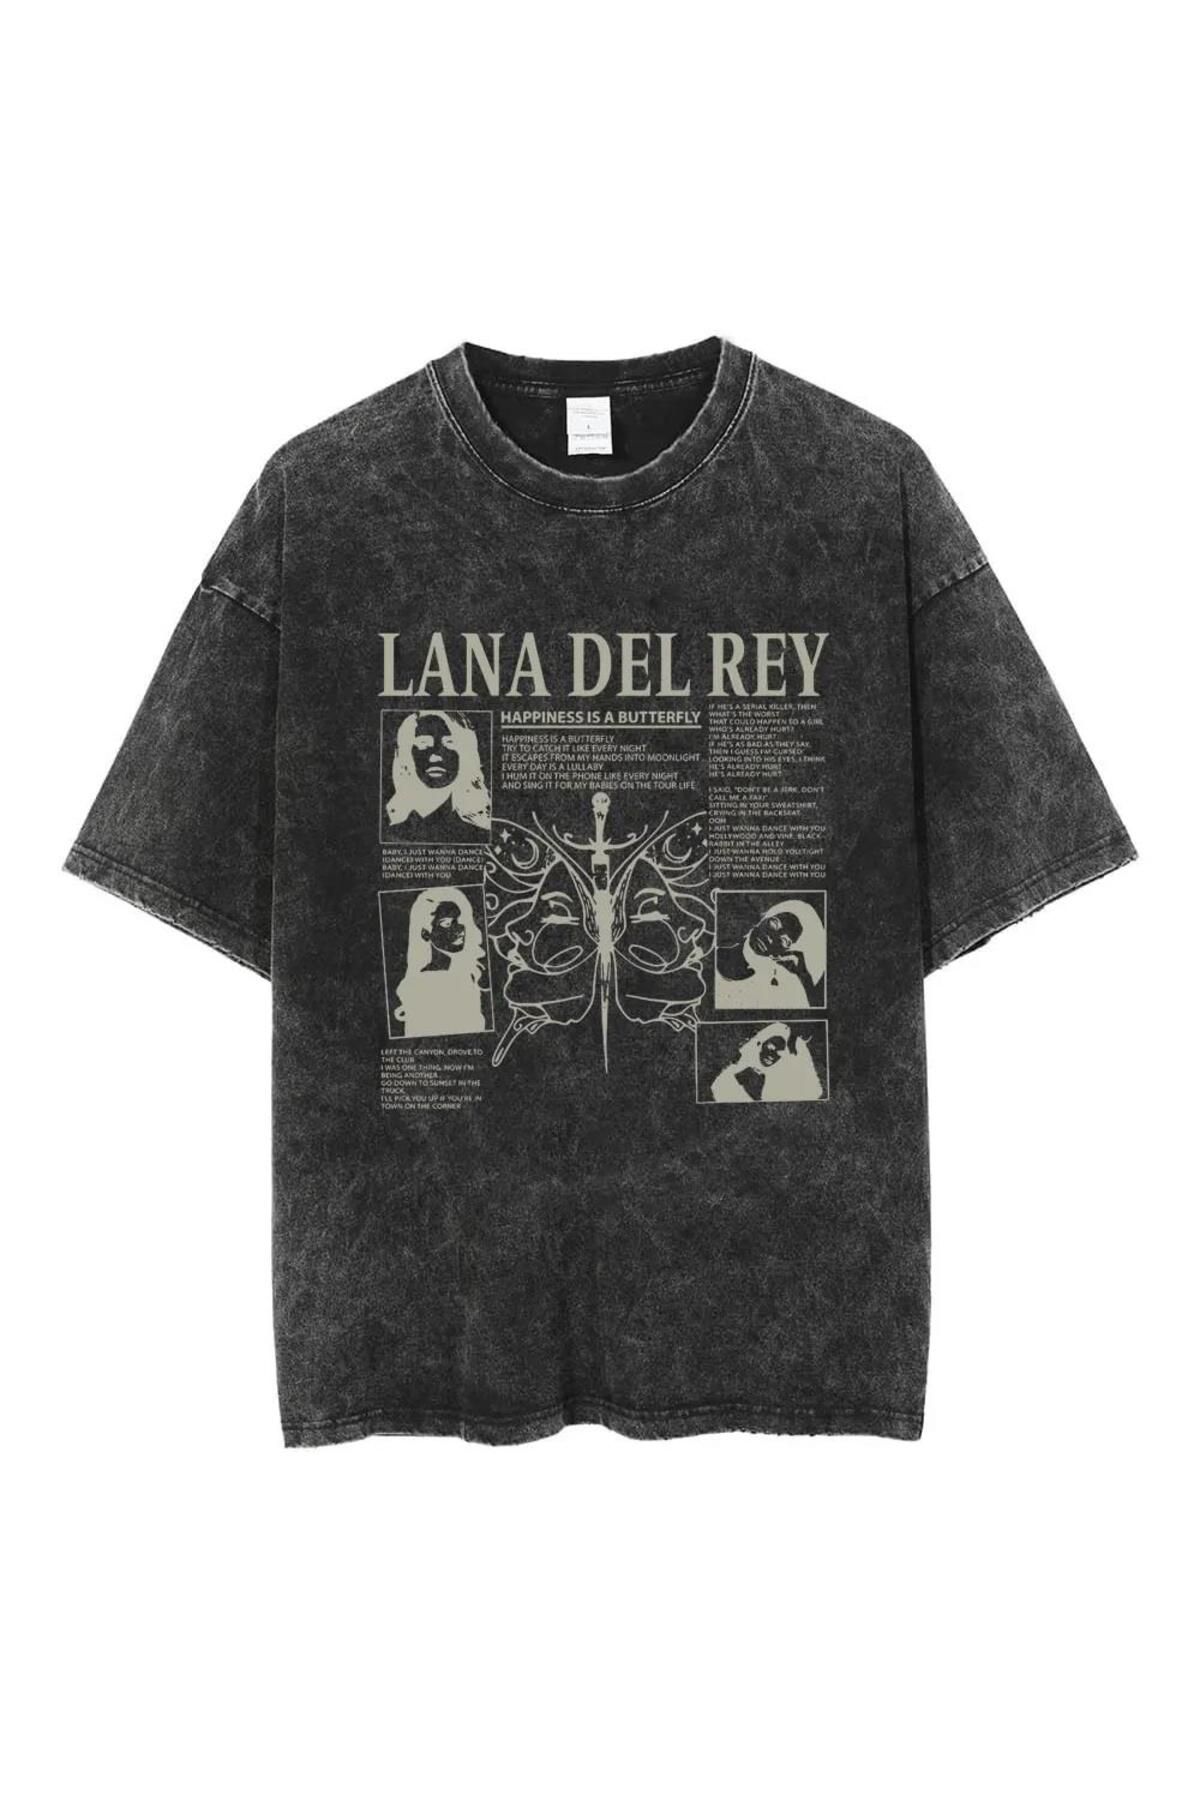 Toum dompuleri moda Yıkamalı Streetwear Lana Del Rey Baskılı Unisex Oversize Vintage T-shirt